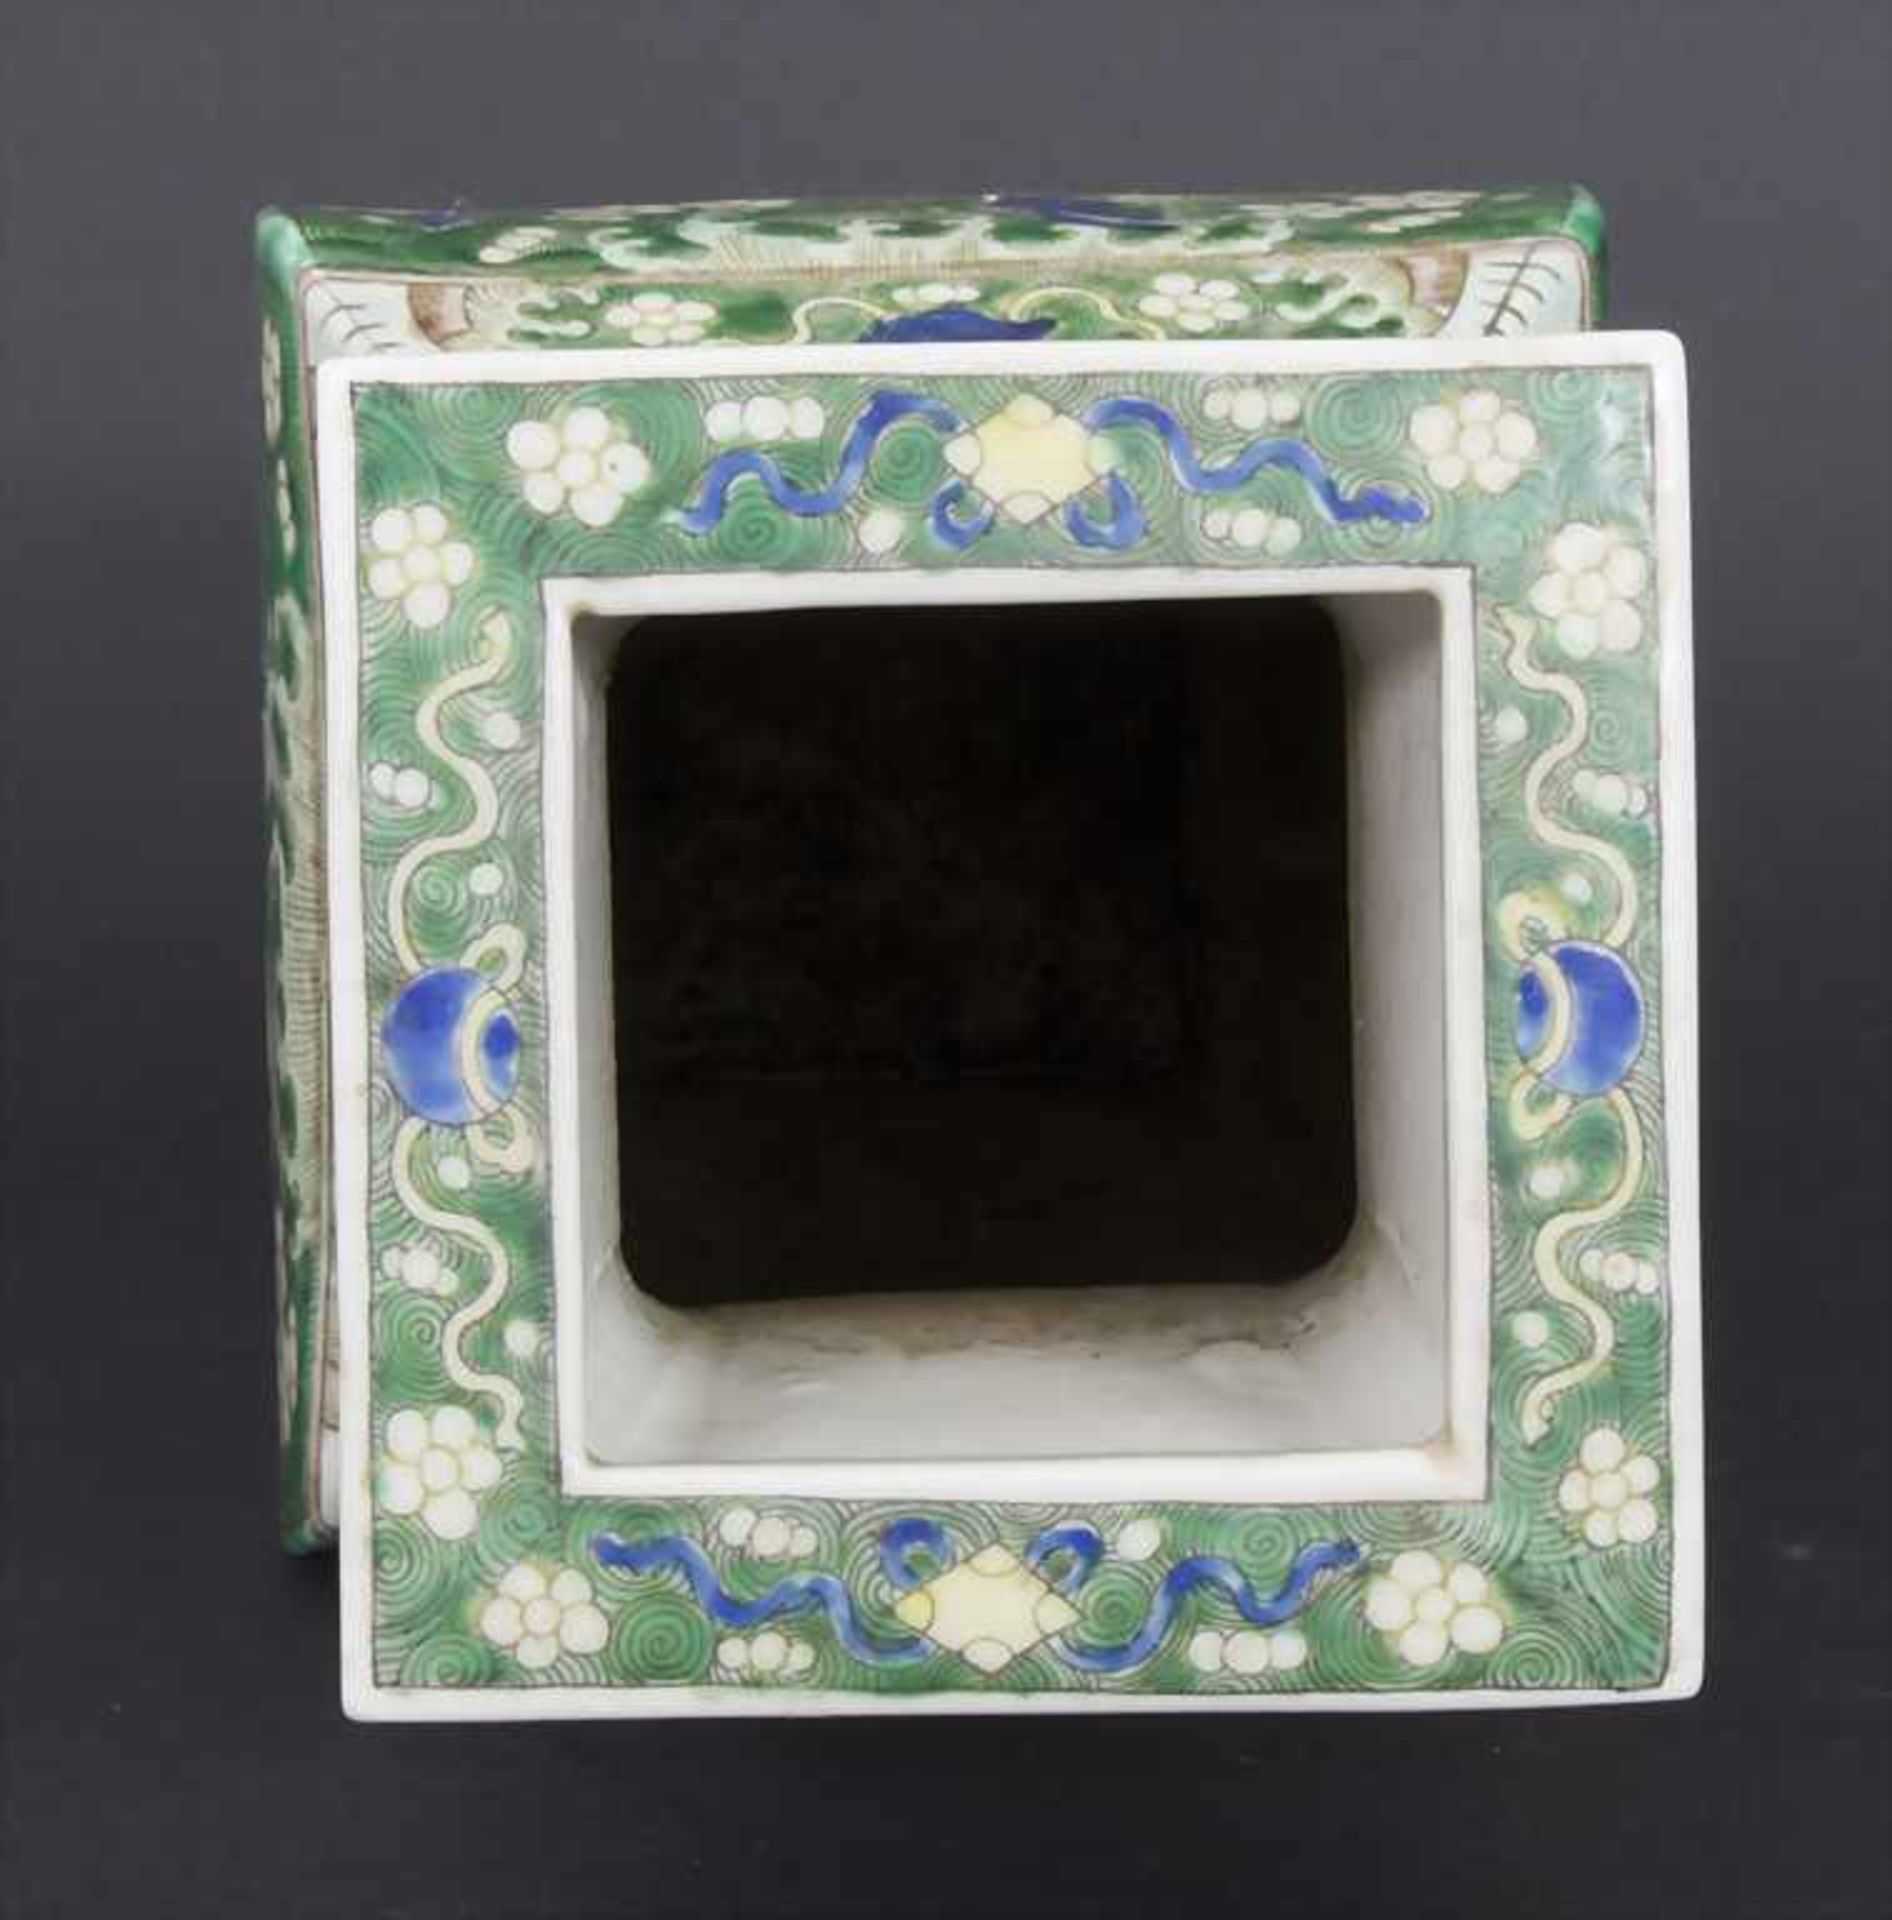 Ziervase, China, späte Qing-Dynastie, 19./20. Jh.Material: Porzellan, polychrom bemalt,Marke/ - Bild 13 aus 17